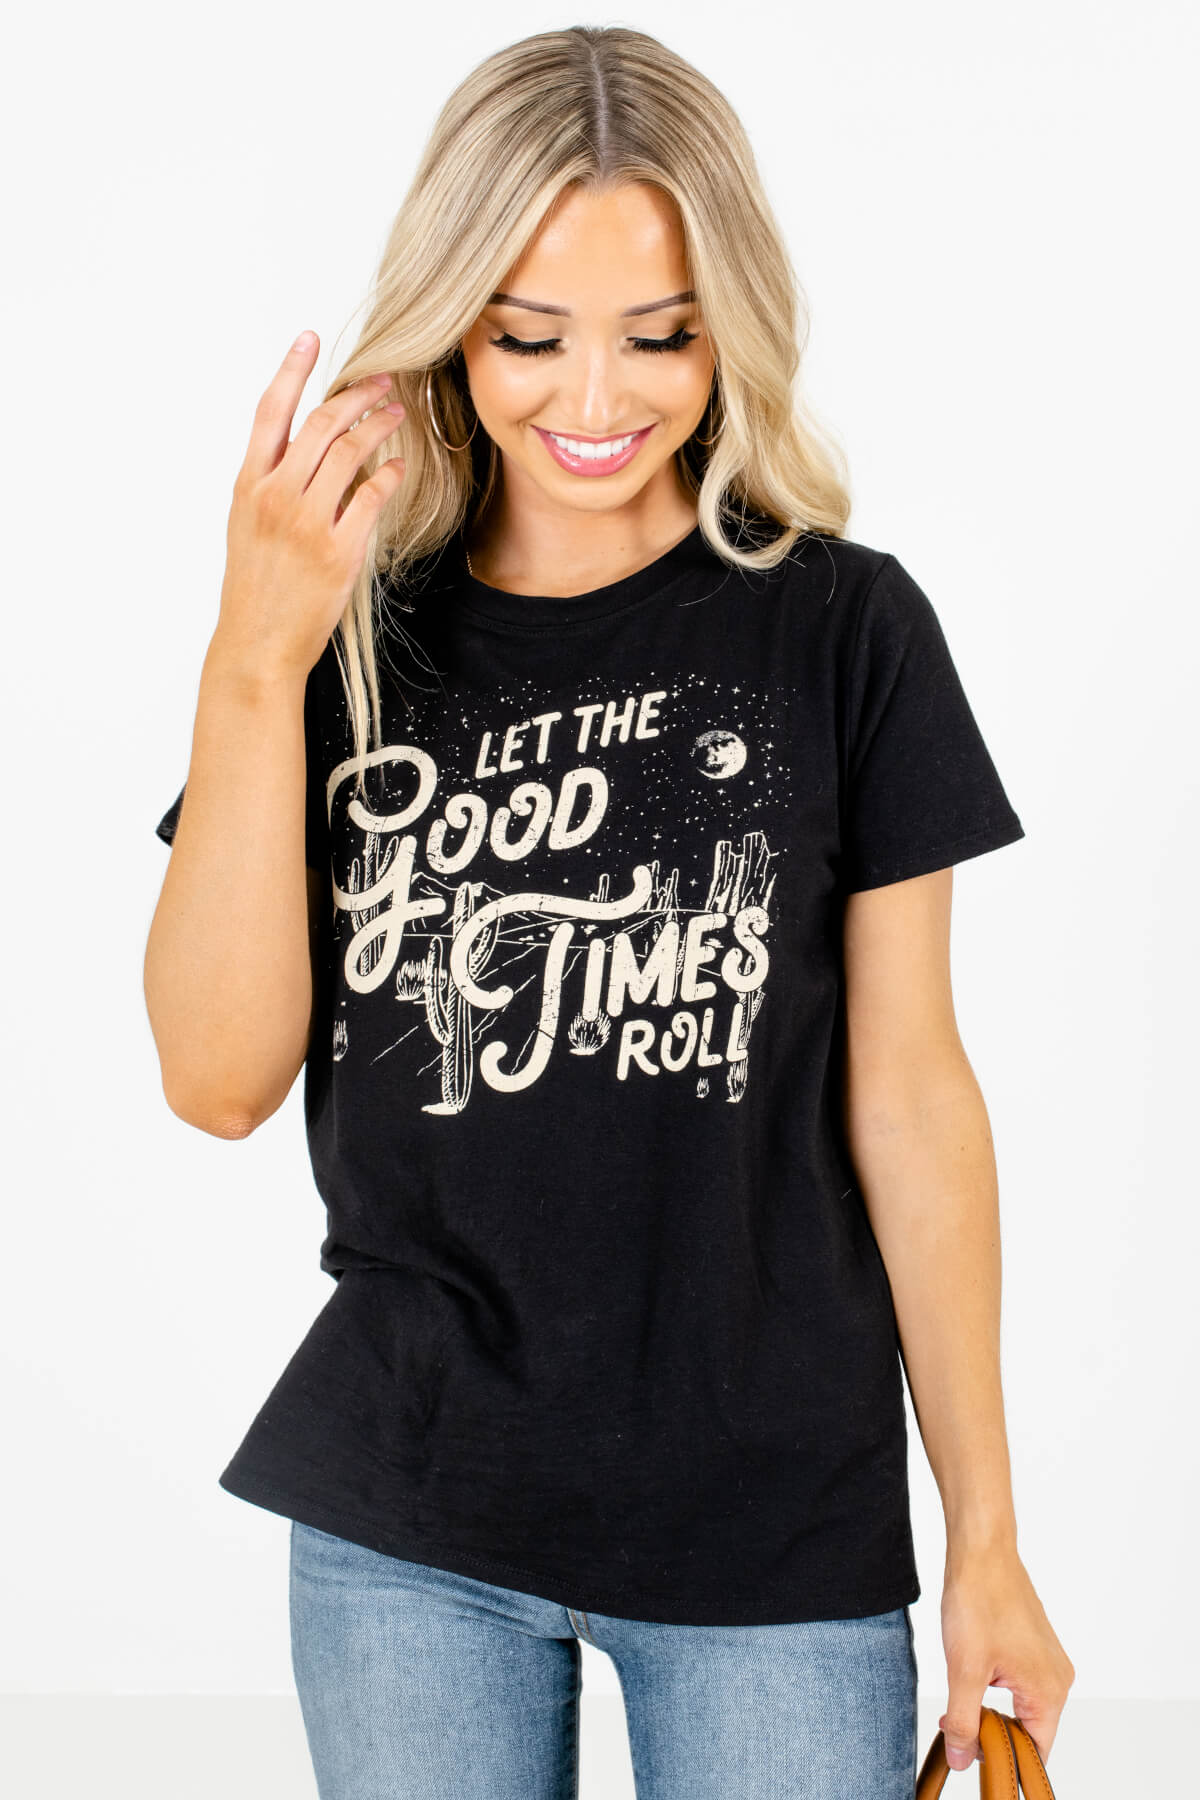 Women's Black Round Neckline Boutique Graphic T-Shirt